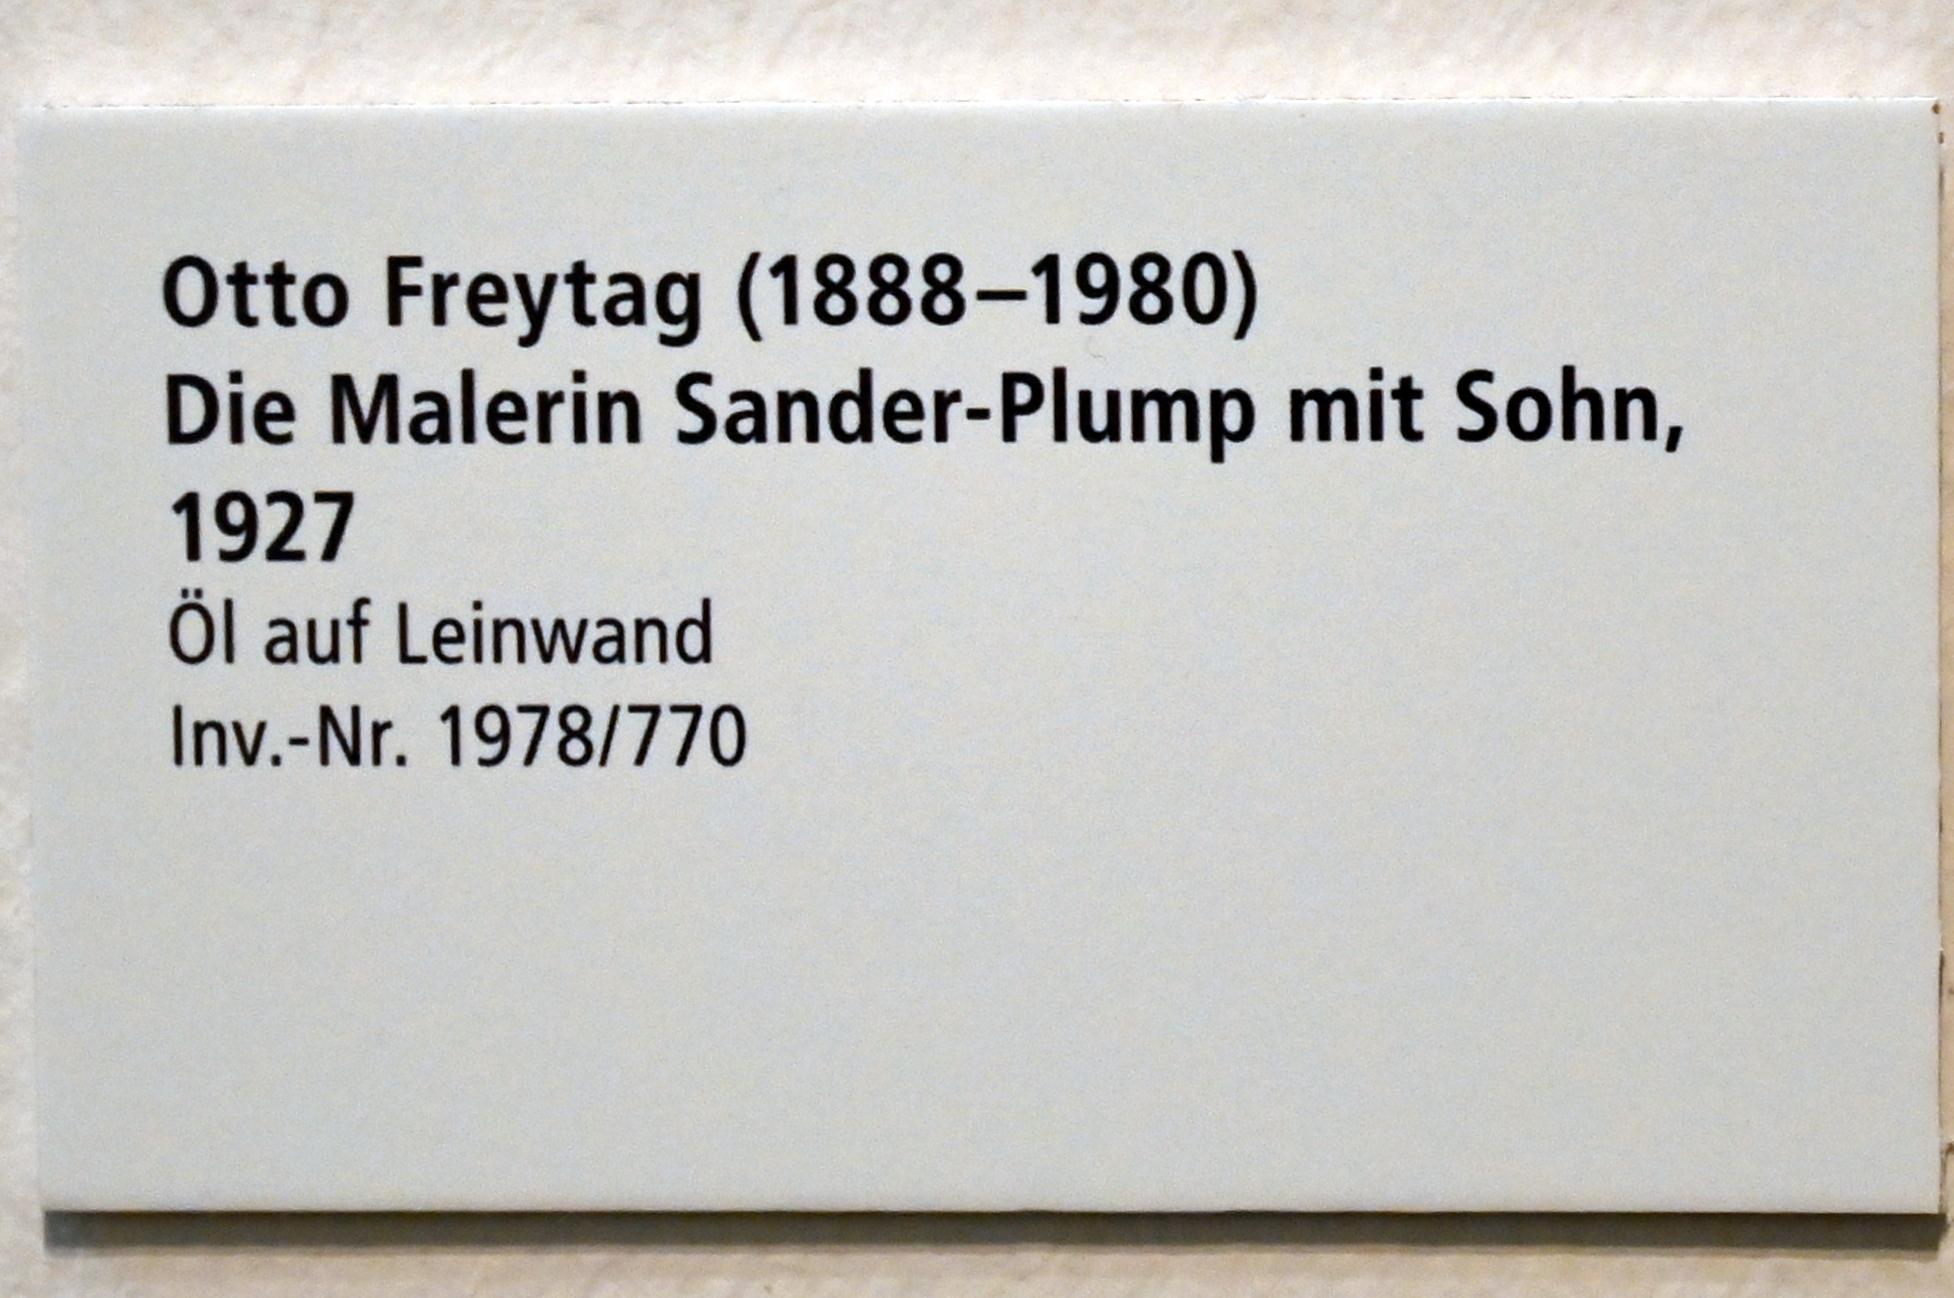 Otto Freytag (1927), Die Malerin Sander-Plump mit Sohn, Schleswig, Landesmuseum für Kunst und Kulturgeschichte, Galerie der Klassischen Moderne, 1927, Bild 2/2